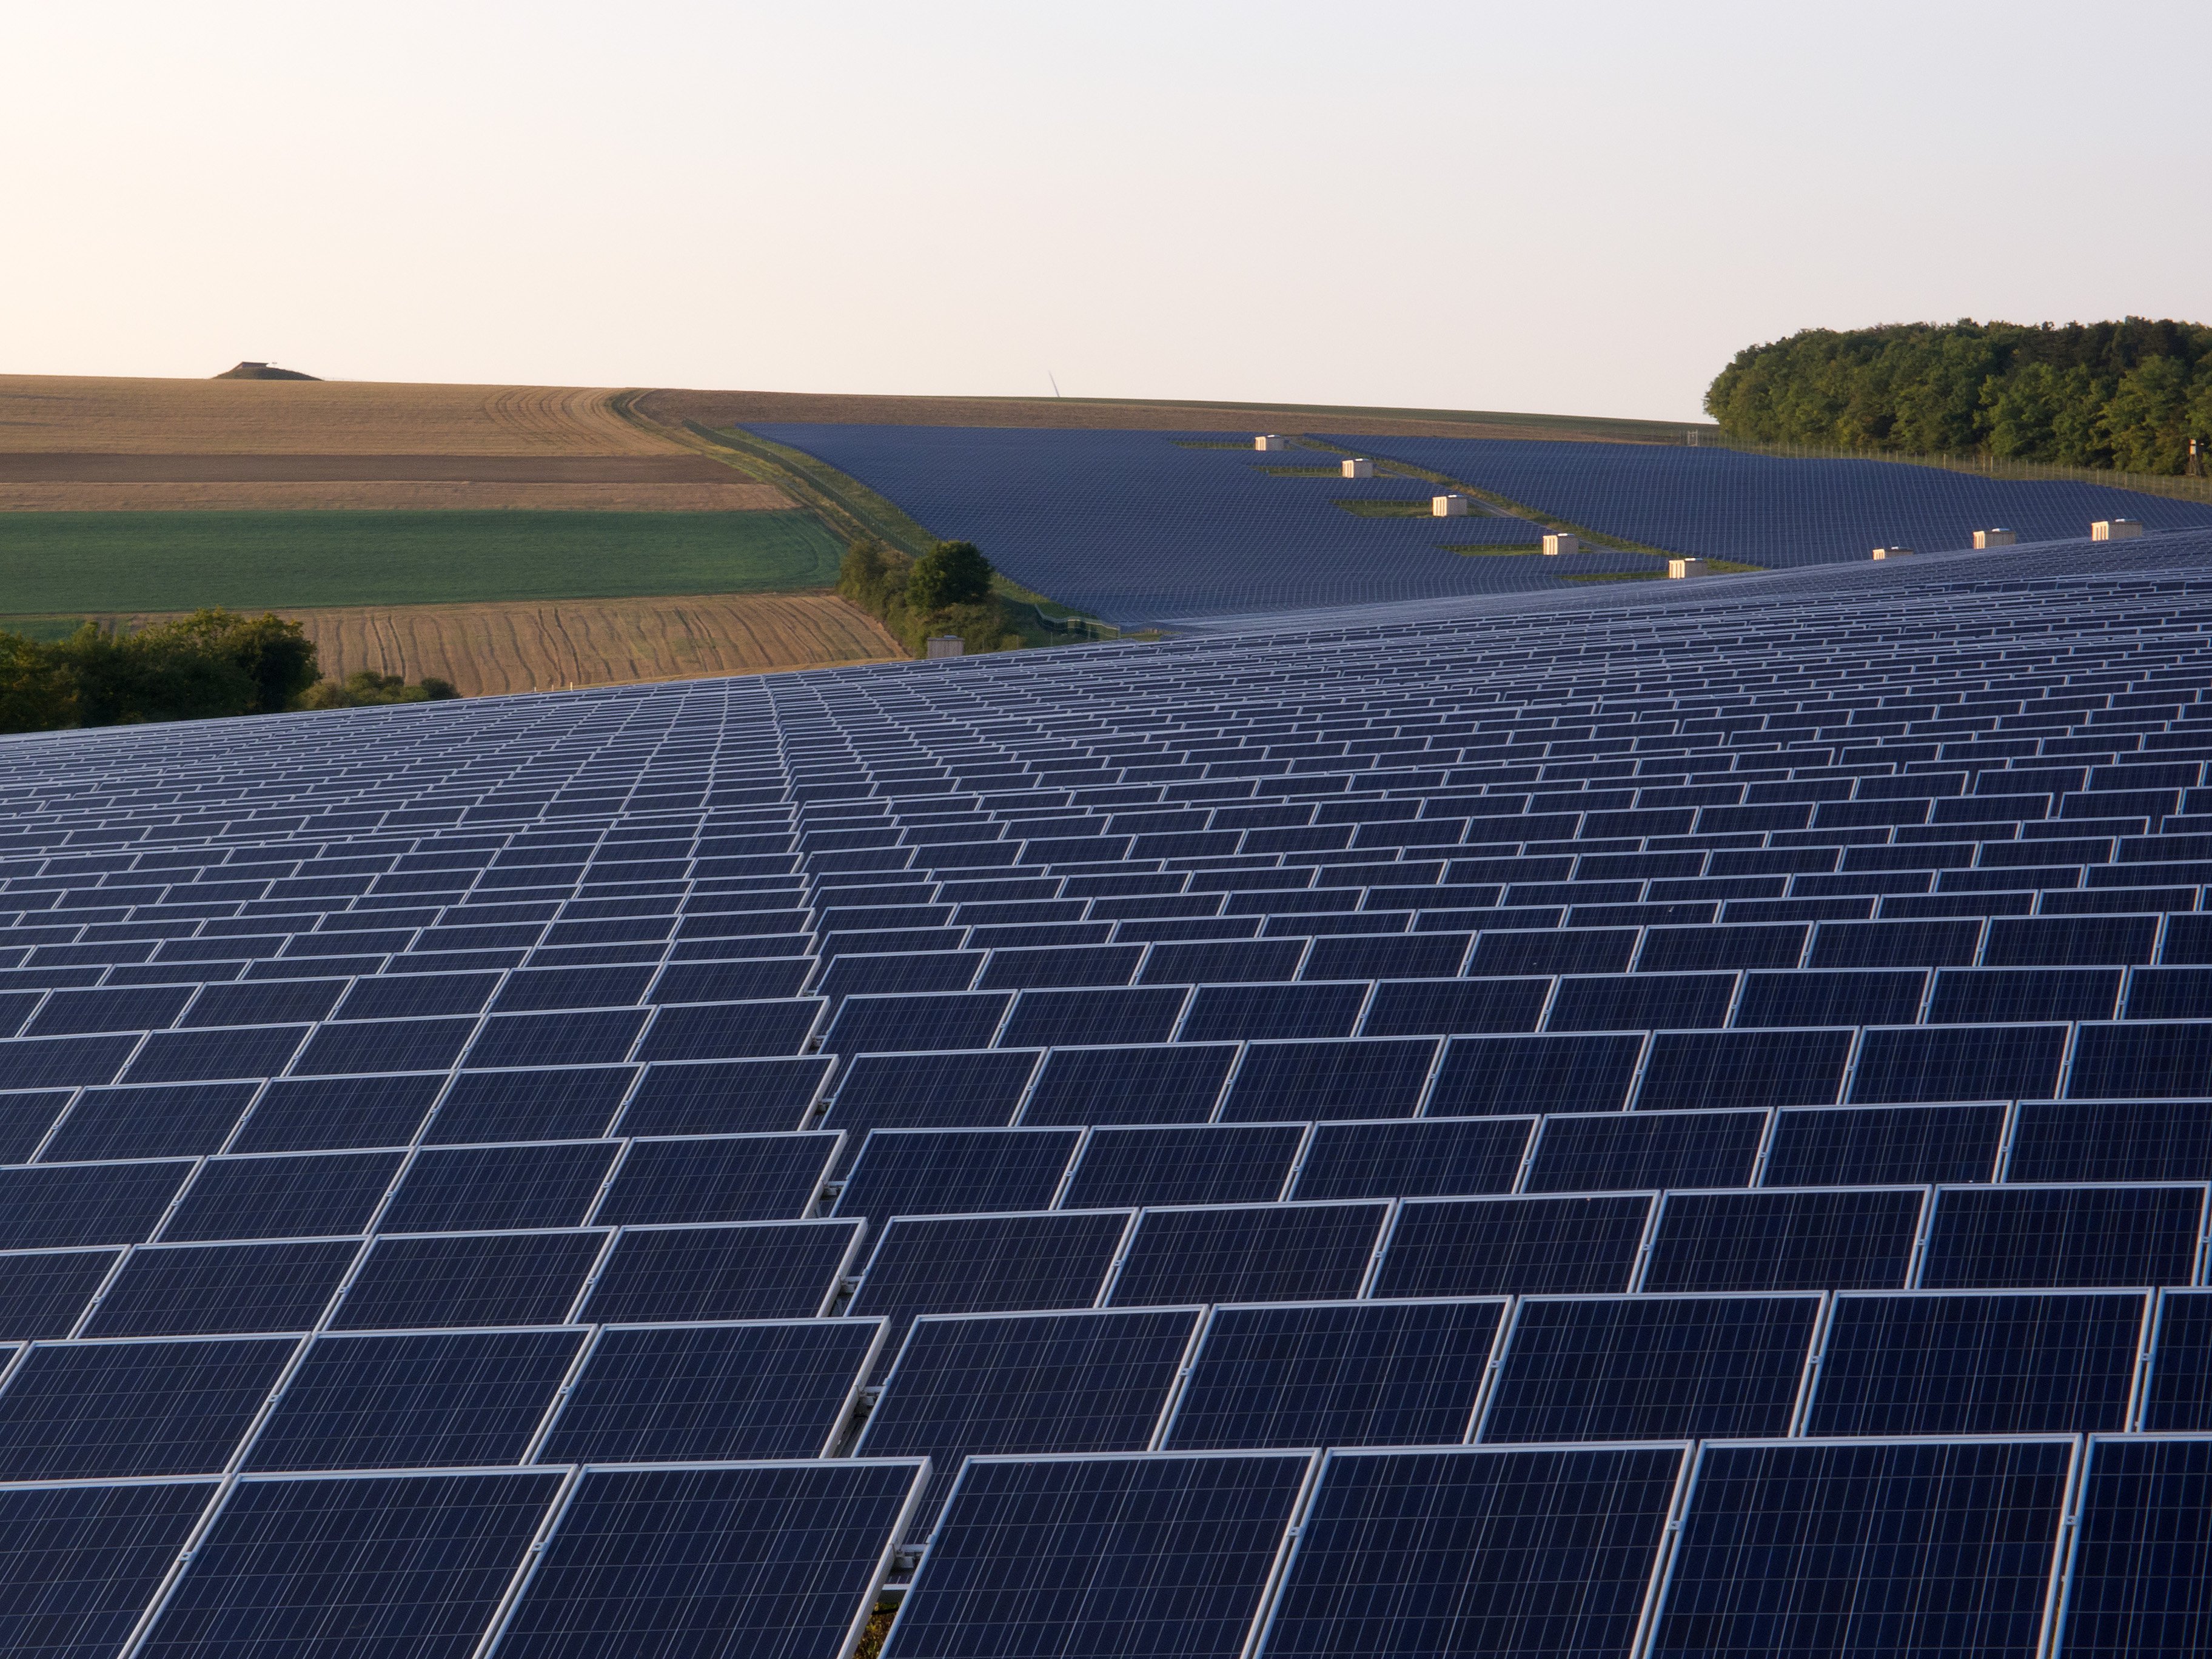 Parque solar fotovoltaico en Alemania. FOTO: Wikimedia